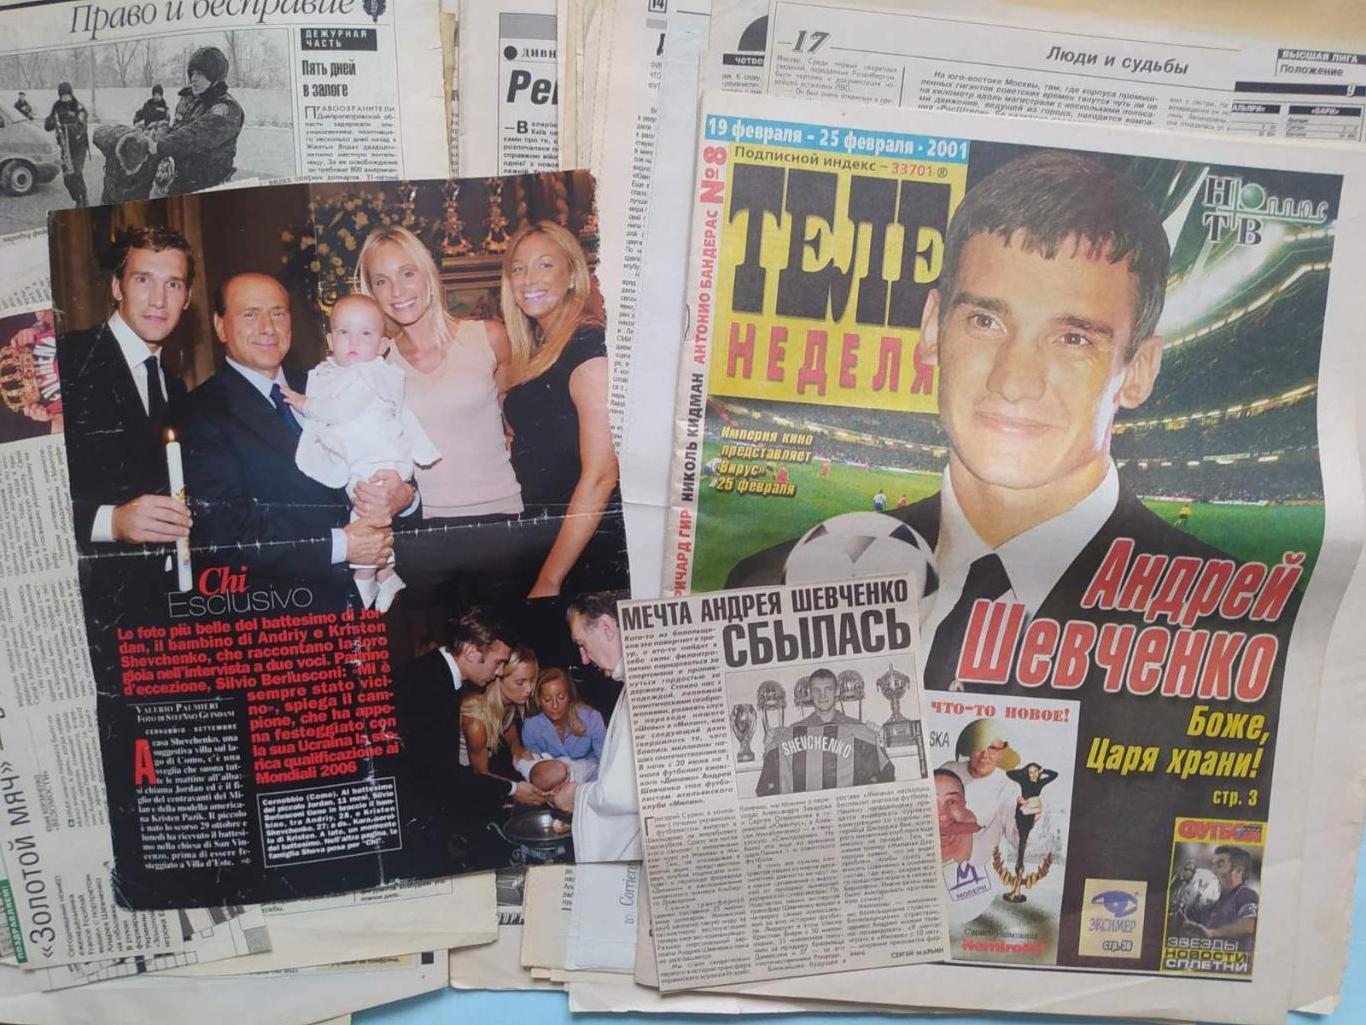 Футболист Андрей Шевченко около сотни статей и фото из разных газет и журналов 5